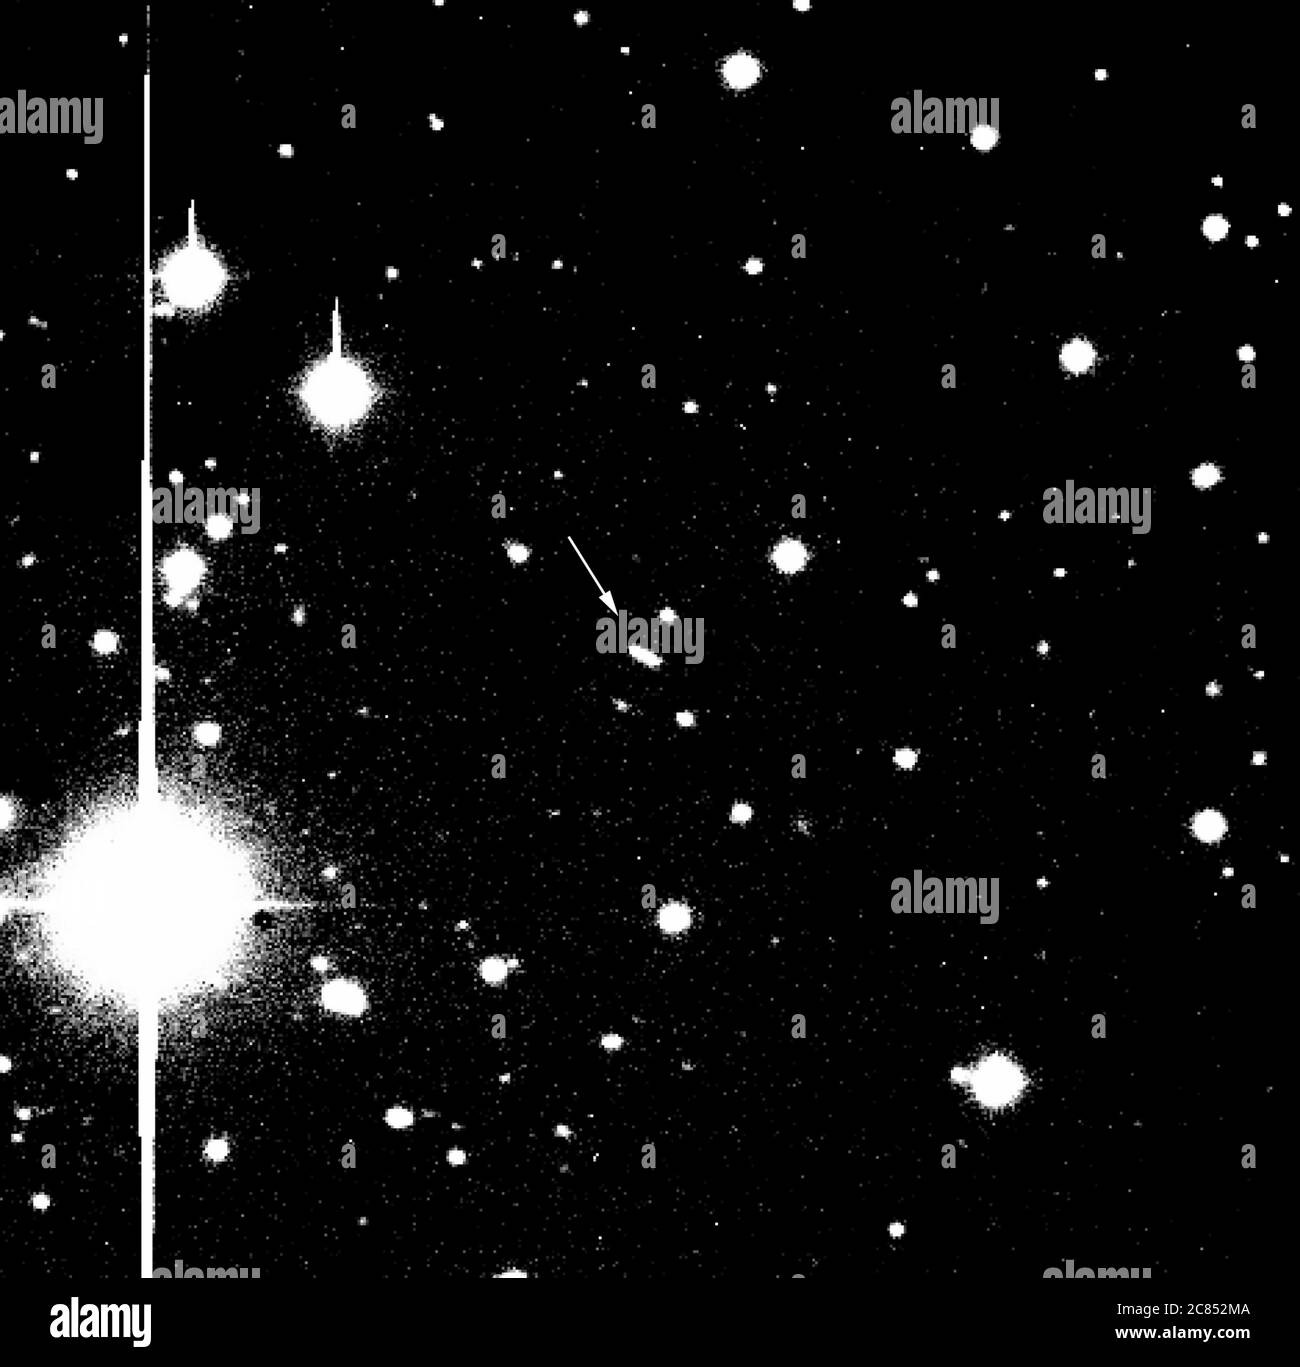 Washington, Stati Uniti. 21 luglio 2020. Questa immagine, presa con il telescopio Hale da 200 pollici sul Monte Palomar dagli astronomi del Jet Propulsion Laboratory della nave spaziale Deep Space 1, è stata creata a una distanza di 2.3 milioni di miglia dalla Terra. Tracciando un percorso contro la costellazione Gemini, è stato ottenuto il 16 novembre 1998, 23 giorni dopo il lancio della navicella da Capo Canaveral, FL. Nella parte superiore dell'immagine è a nord. Ogni lato di questa immagine quadrata è di cinque minuti di arco o circa 0.08 di un grado. Crediti NASA/UPI: Notizie dal vivo UPI/Alamy Foto Stock